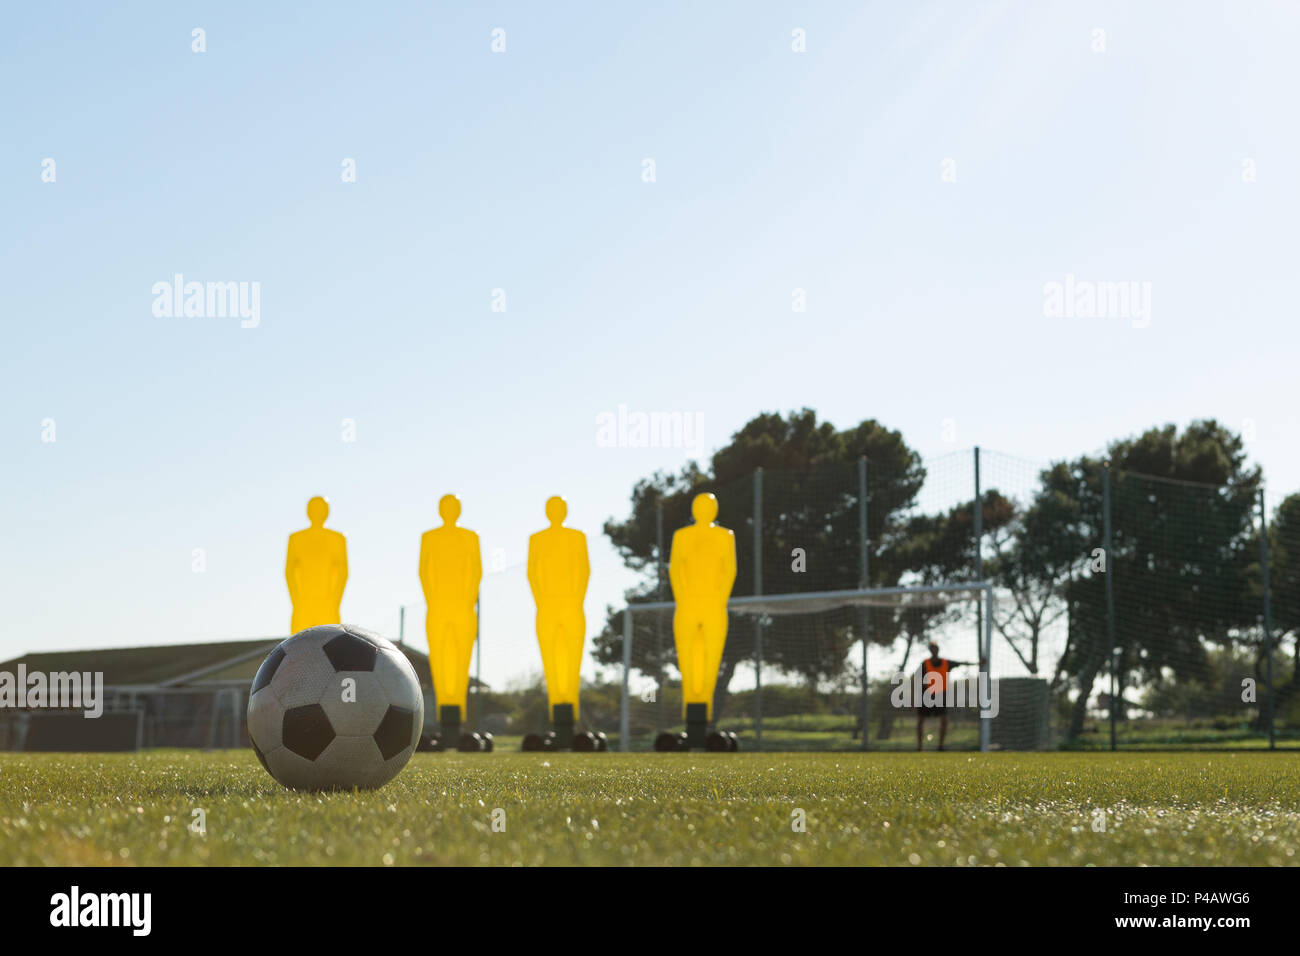 Fußball-Training Ausrüstung und Fußball im Feld Stockfoto